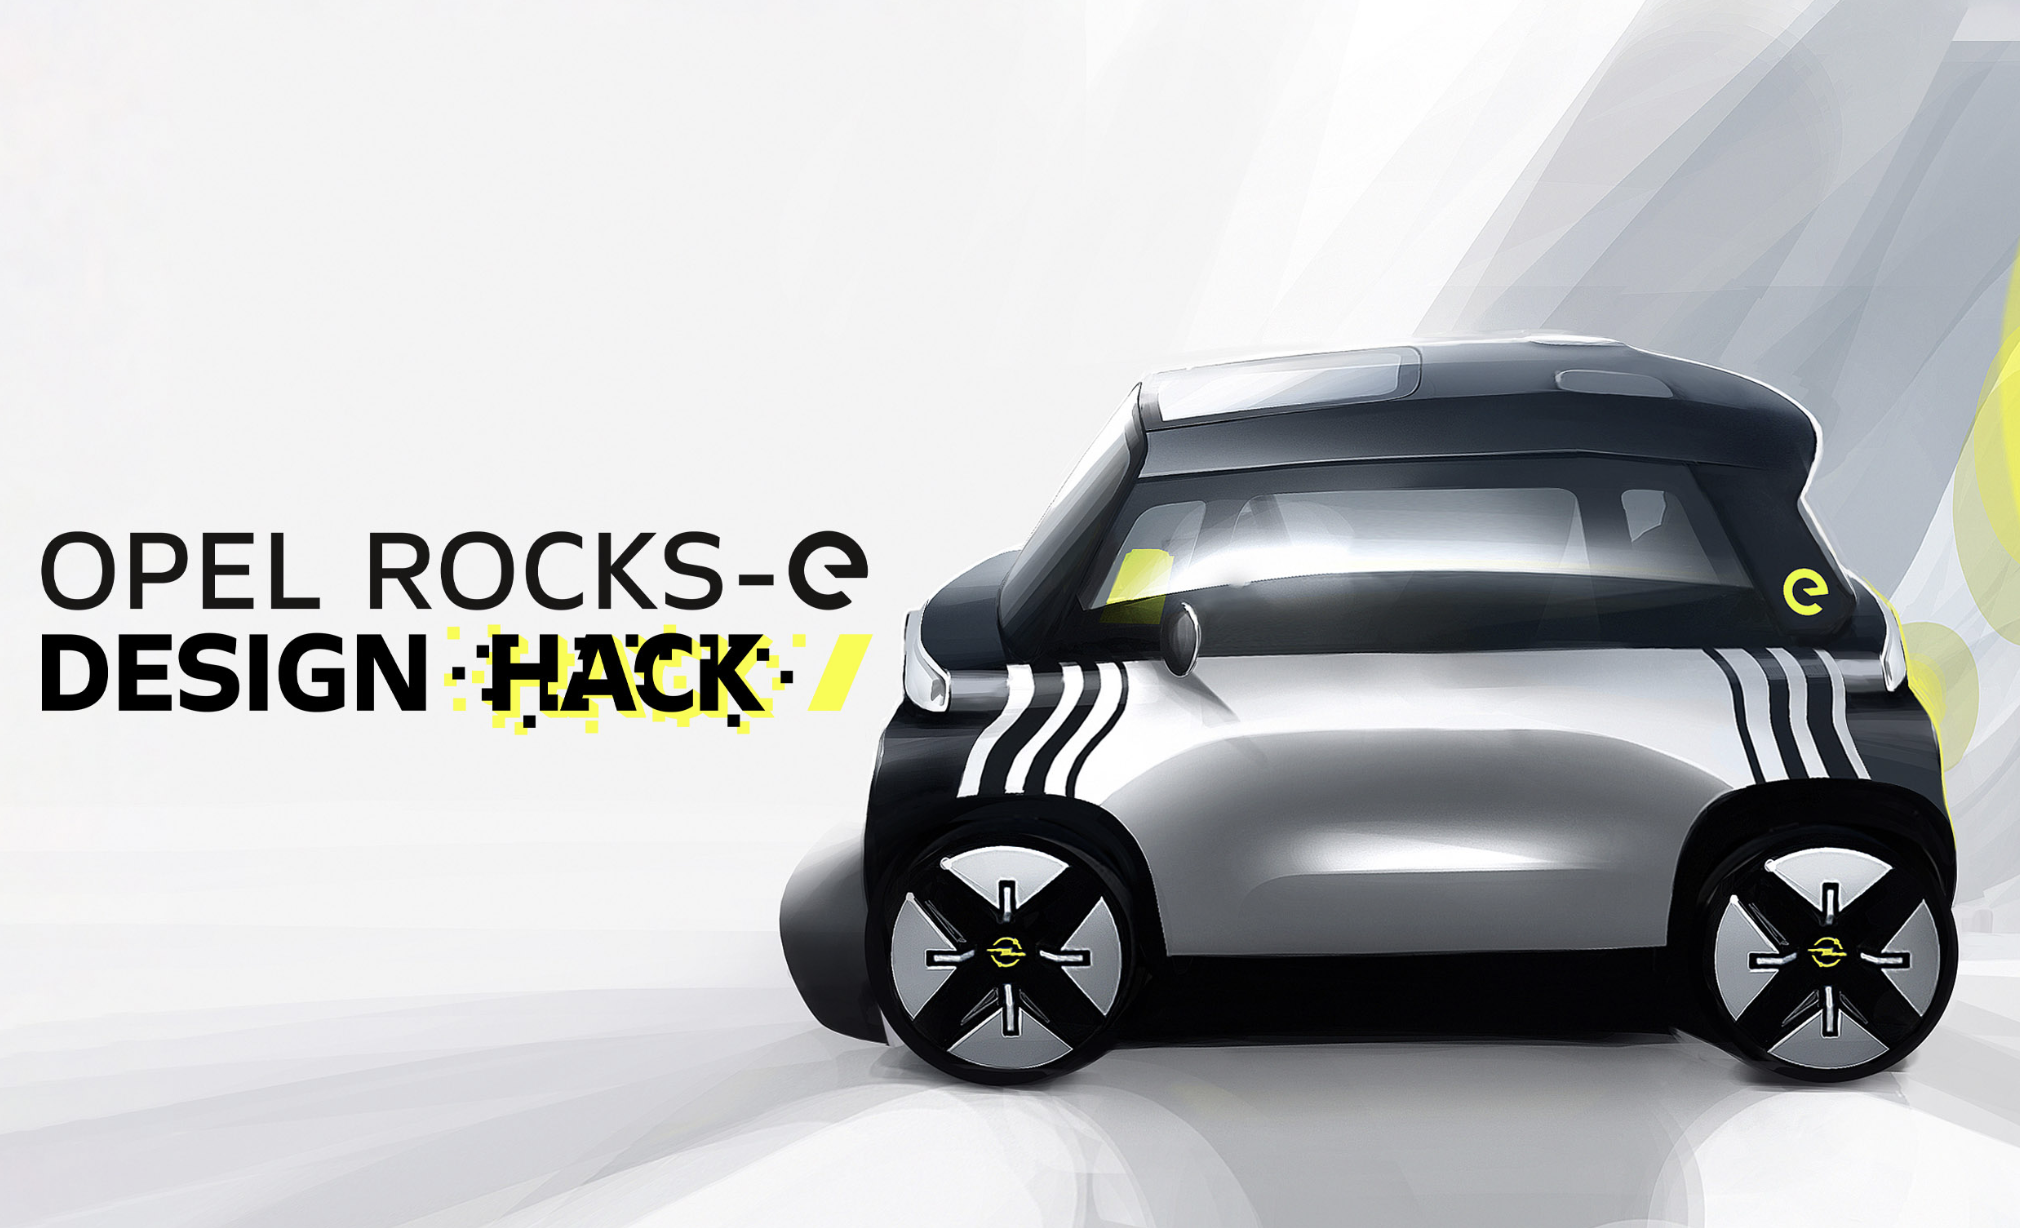 Opel nodigt jong ontwerptalent om Opel Rocks-e Concept te creëren